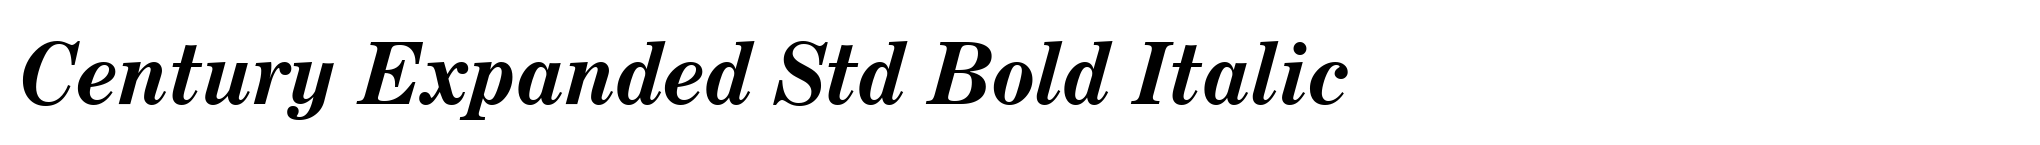 Century Expanded Std Bold Italic image